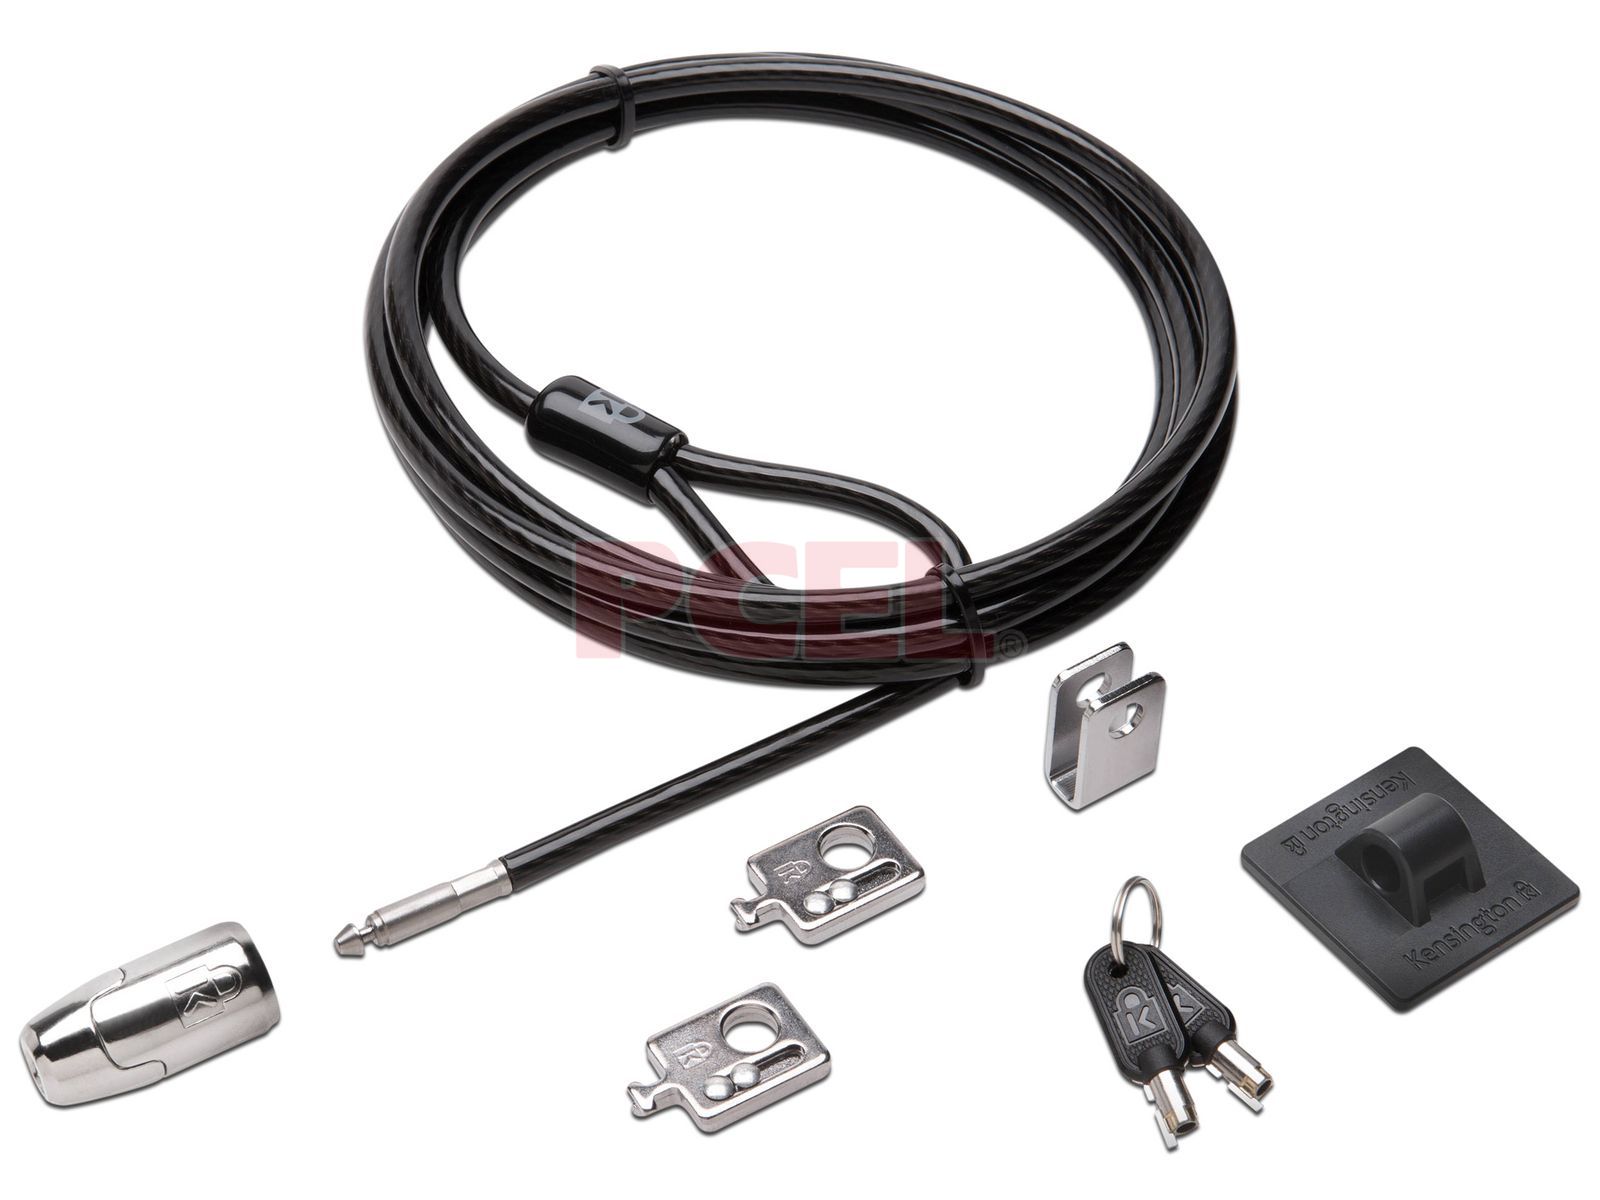 Kit de Candados para Portatil y Periféricos con Sistema de Llaves de 5 mm Cable de Acero al Carbono y Seguridad Multi-Pieza 2.4 m de Longitud Kensington K64424WW